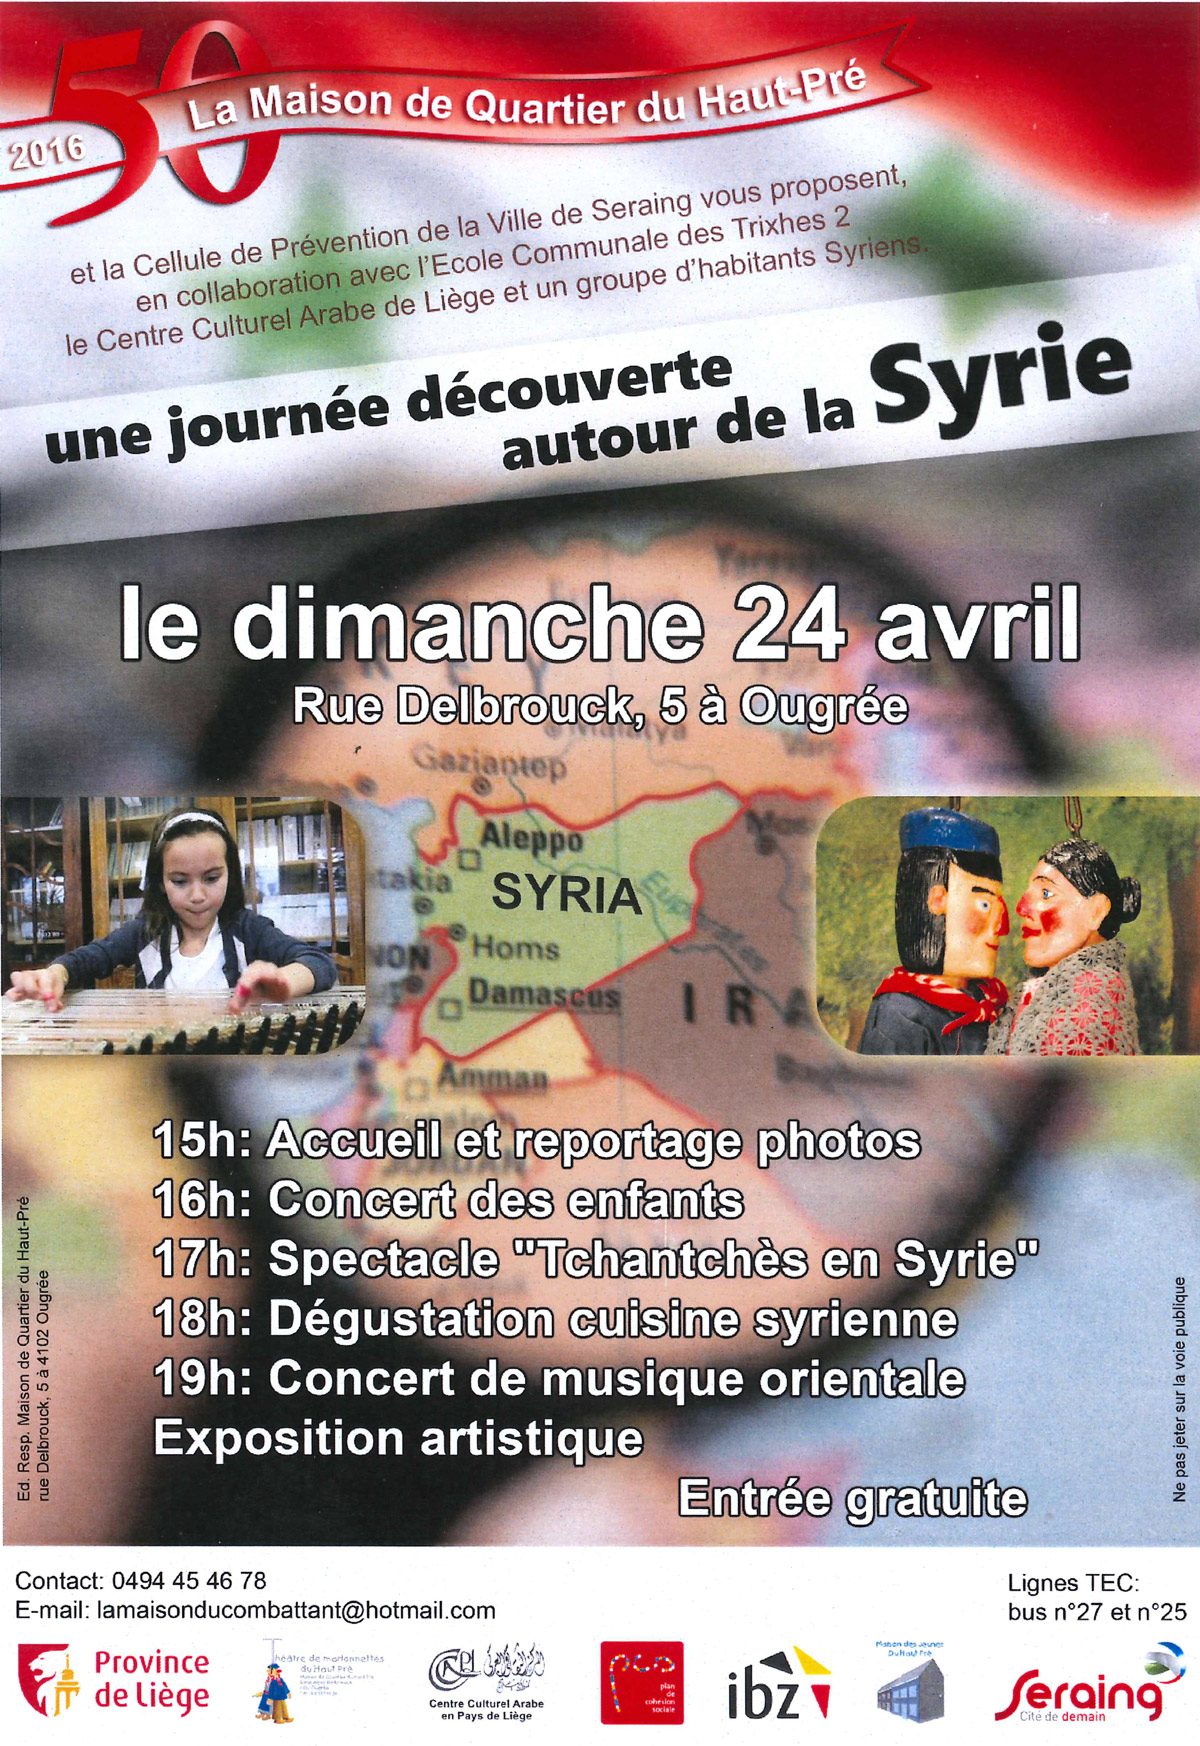 Une journée découverte autour de la syrie